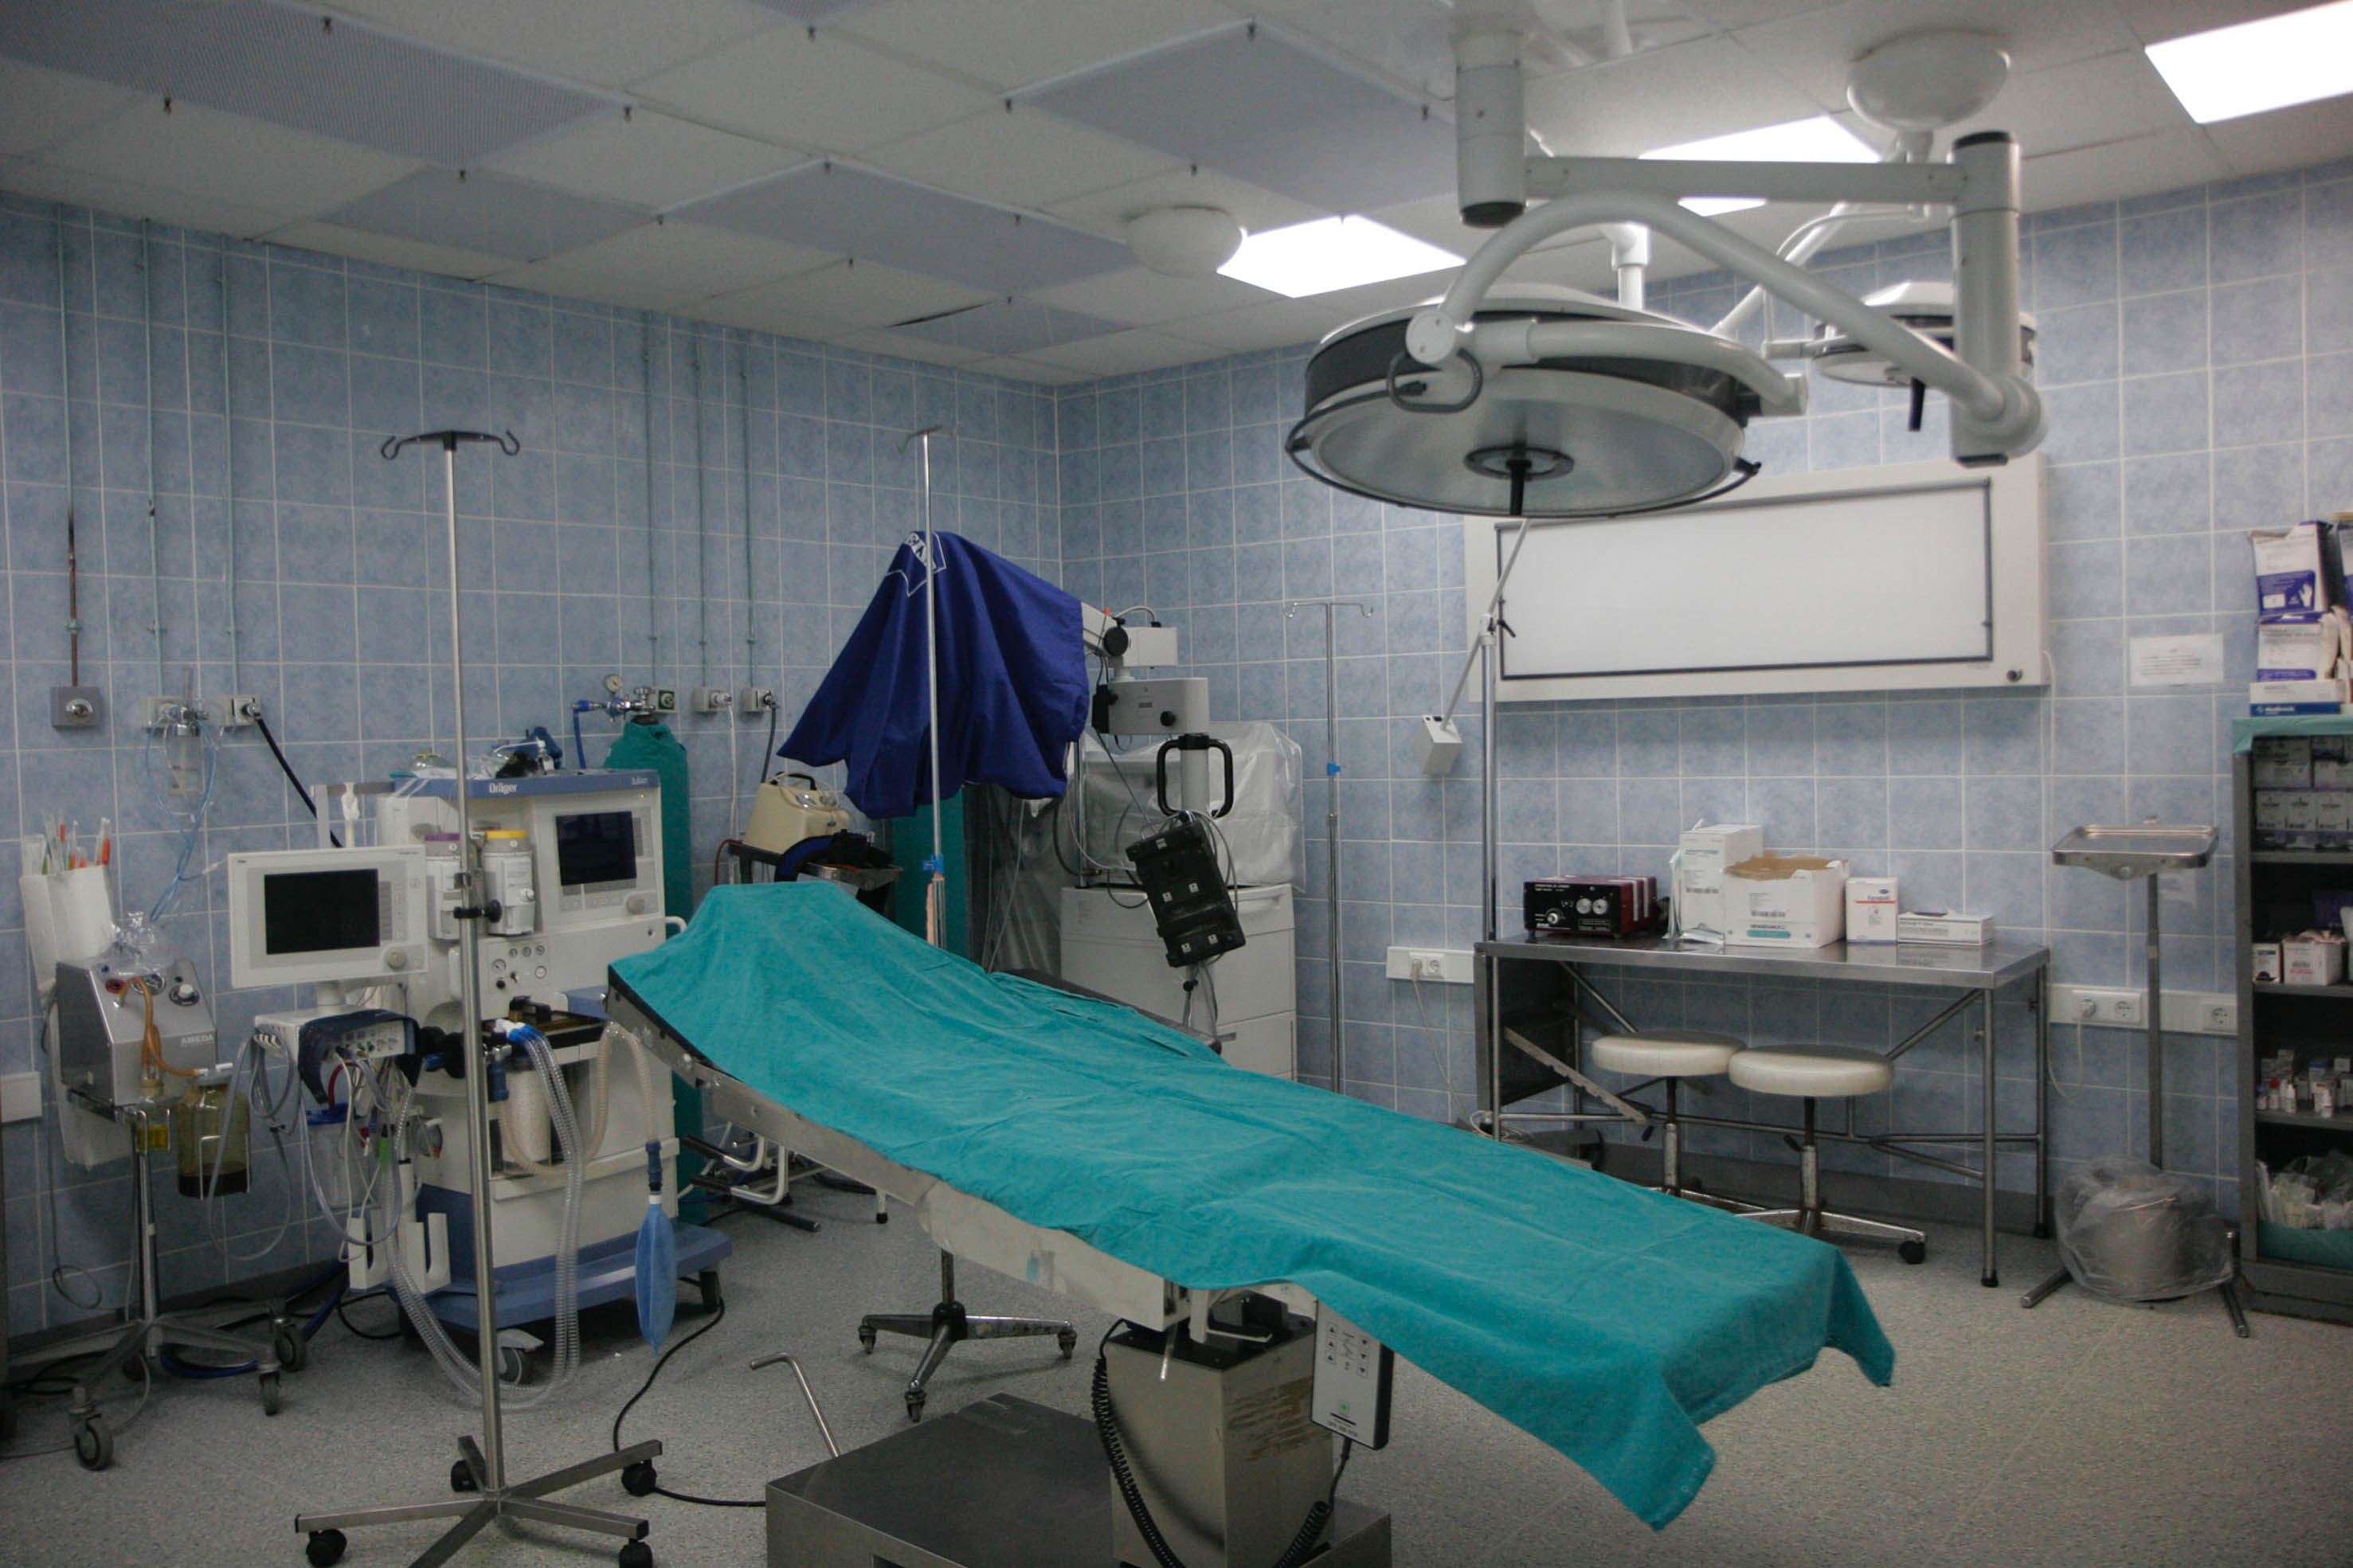 Γιατροί στη Θεσσαλονίκη: Ξέχασαν χειρουργική βελόνα στην κοιλιά ασθενούς - Καταδικάστηκαν για σωματική βλάβη